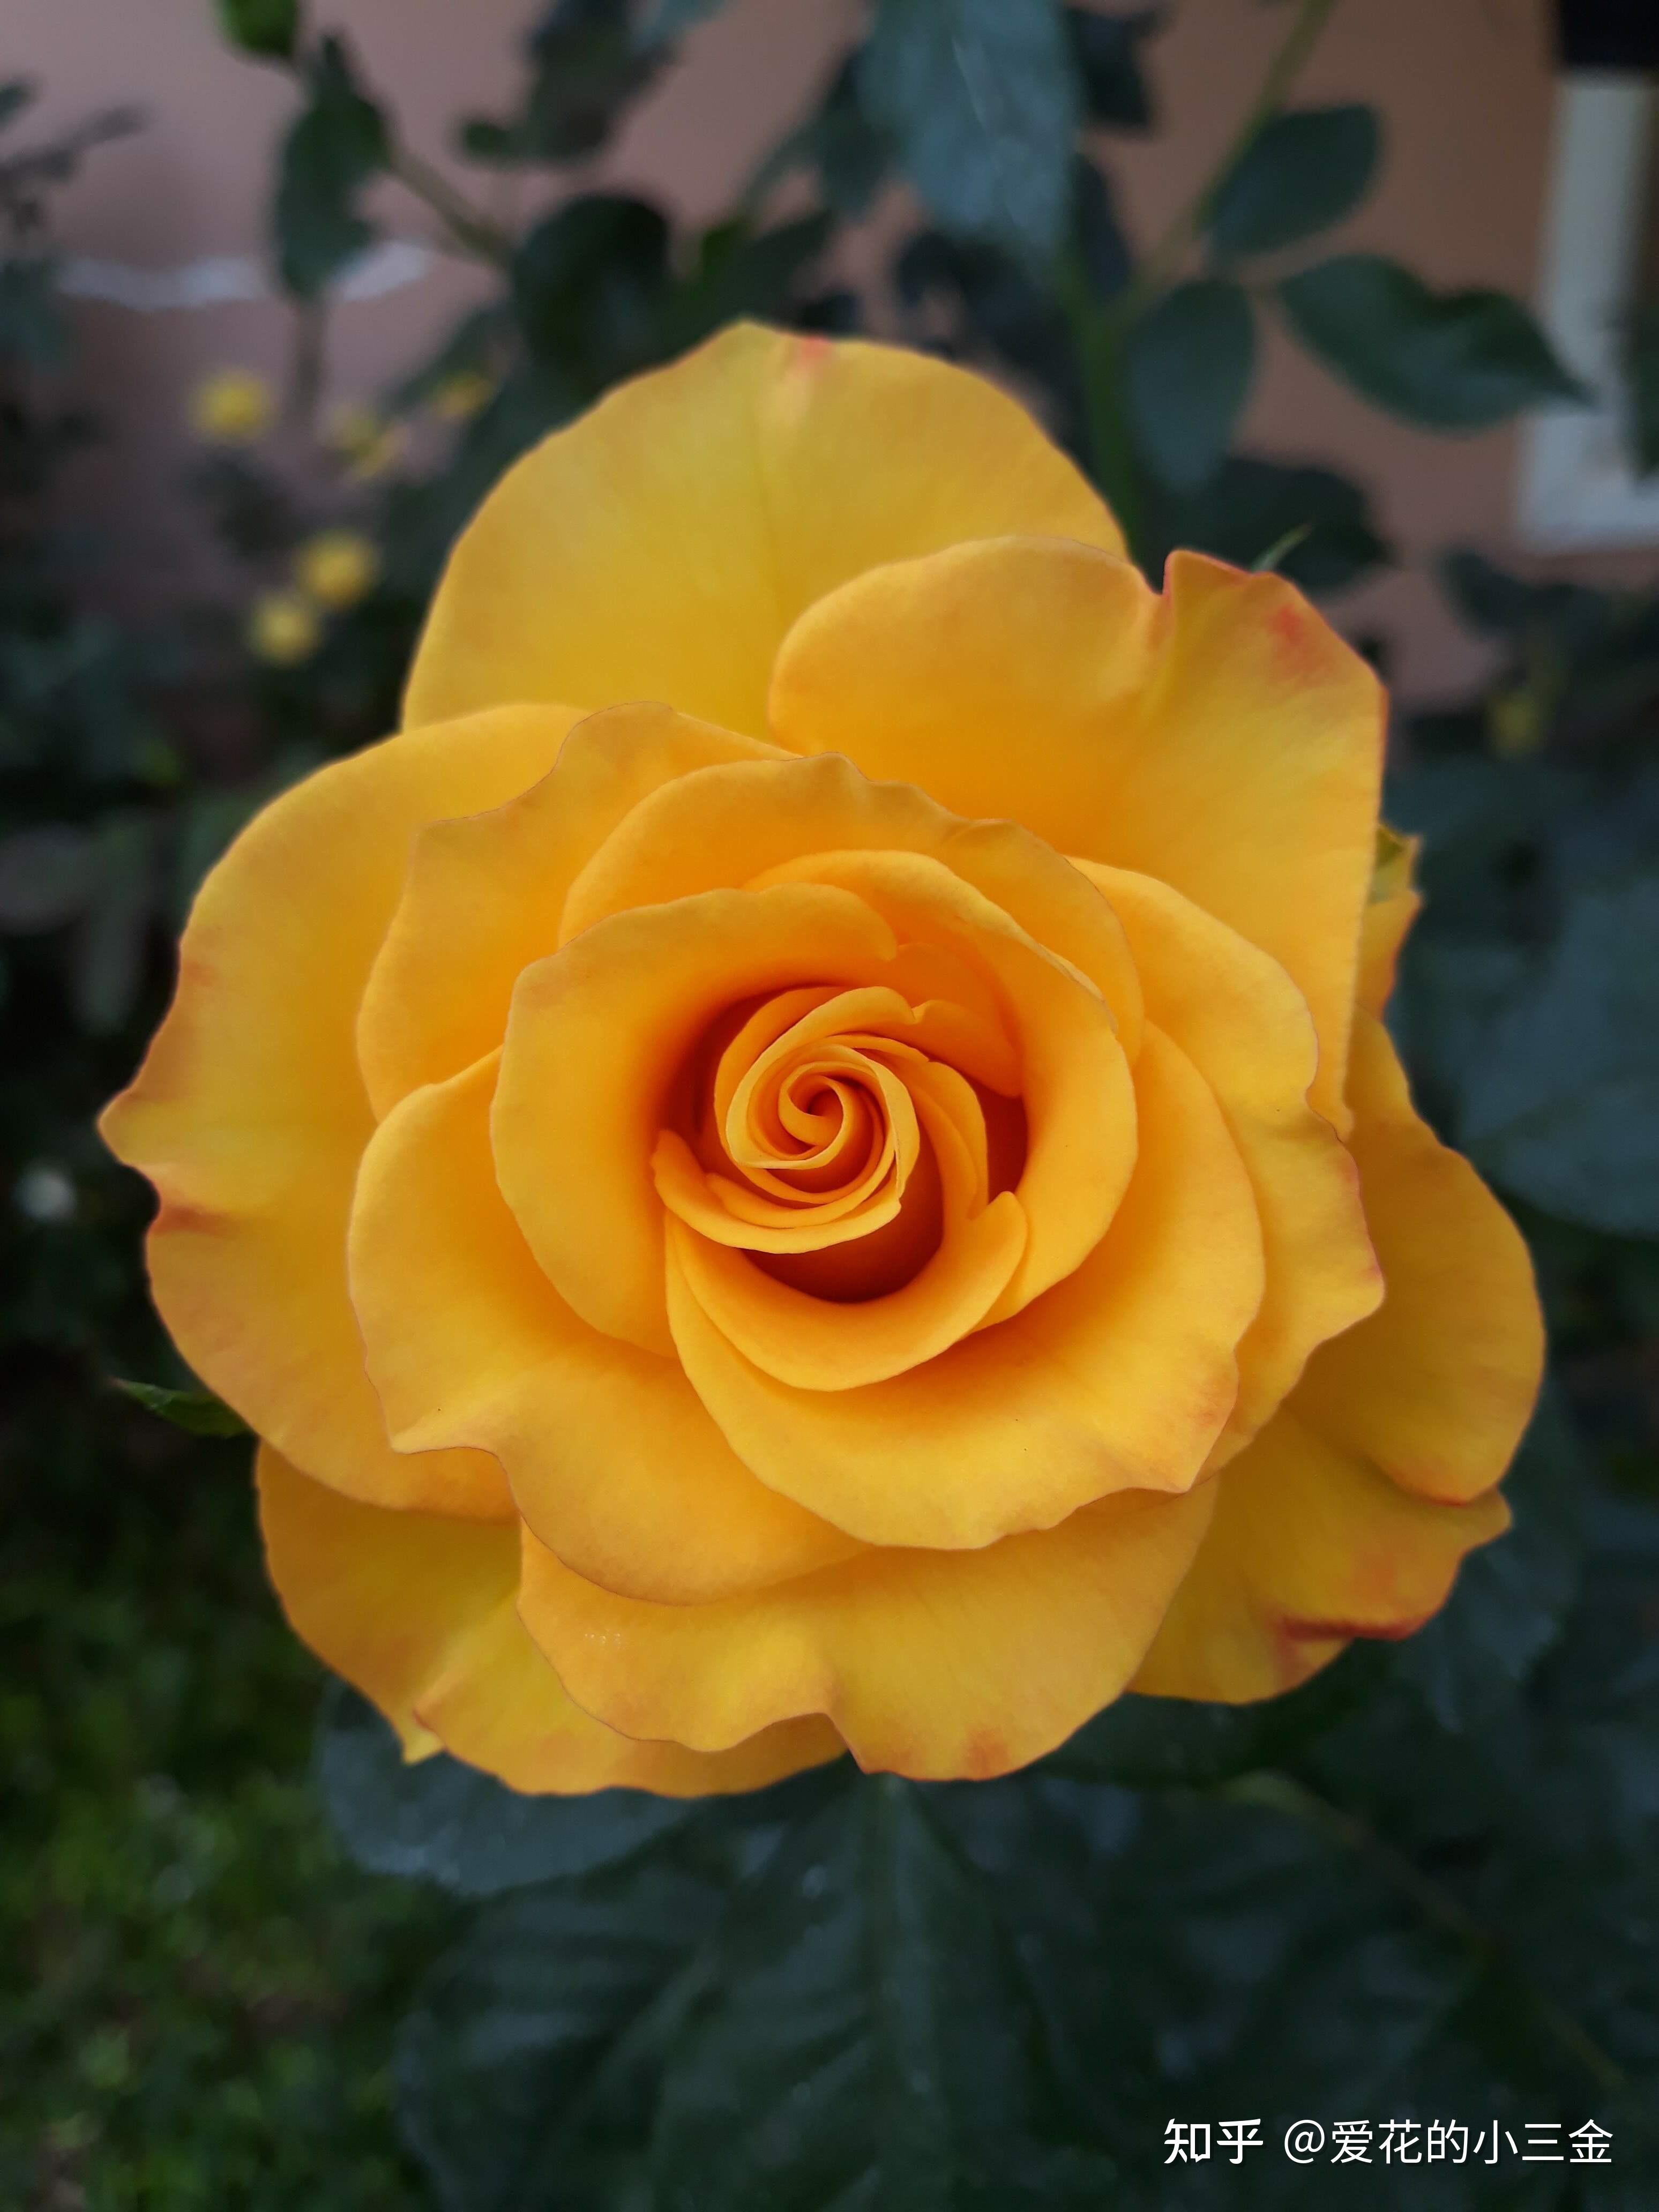 愿你会喜欢上明媚灿烂的黄玫瑰 